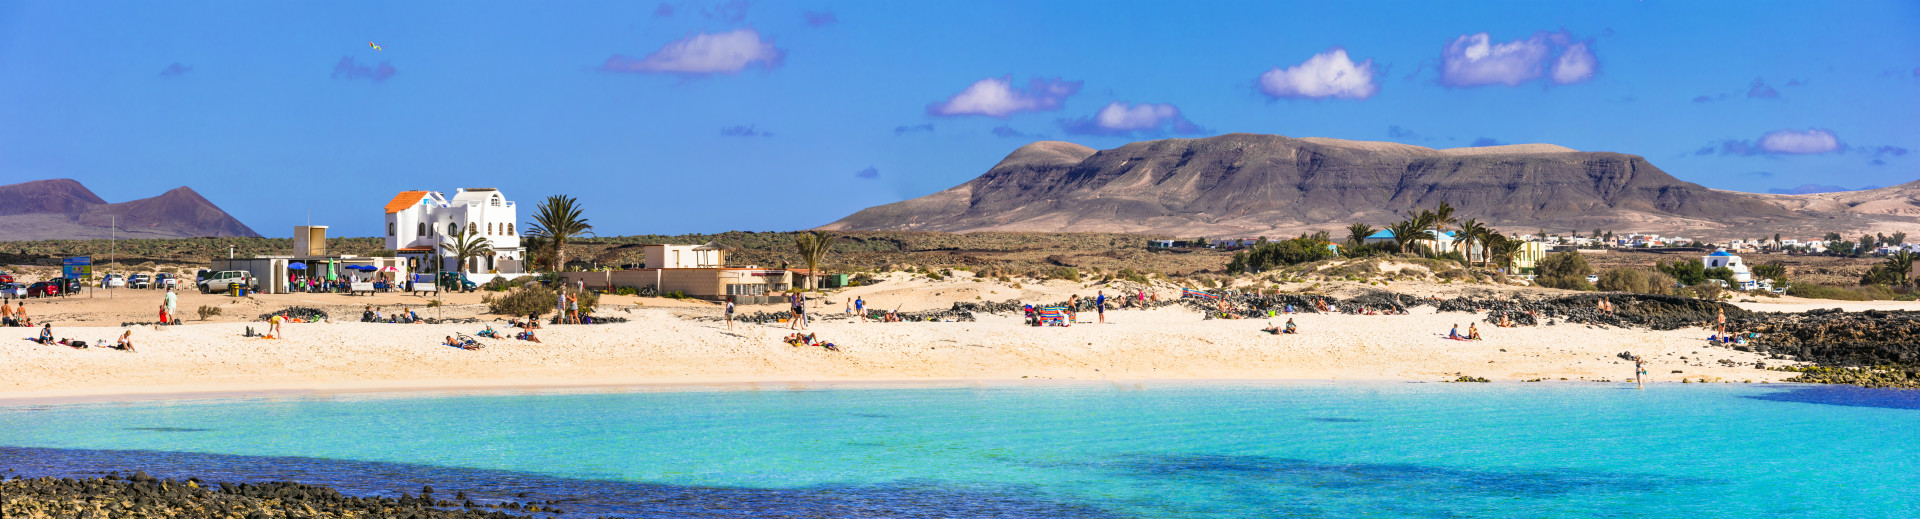 El Cotillo Fuerteventura, Playa de la Concha